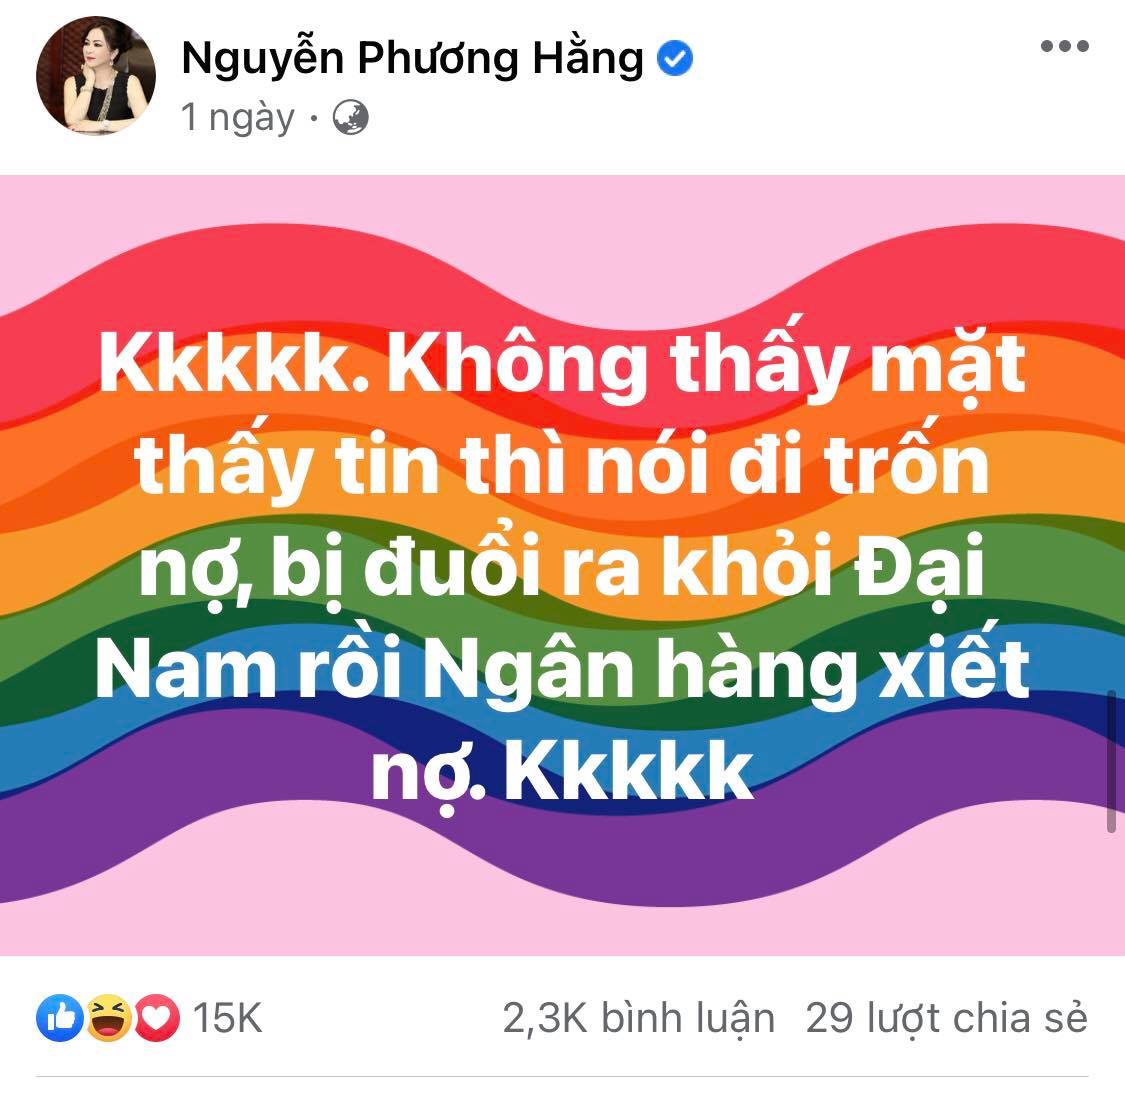 NÓNG: Facebook bà Nguyễn Phương Hằng ‘bay màu’ khó hiểu sau tin đồn trốn nợ, bị đuổi khỏi Đại Nam? - Ảnh 4